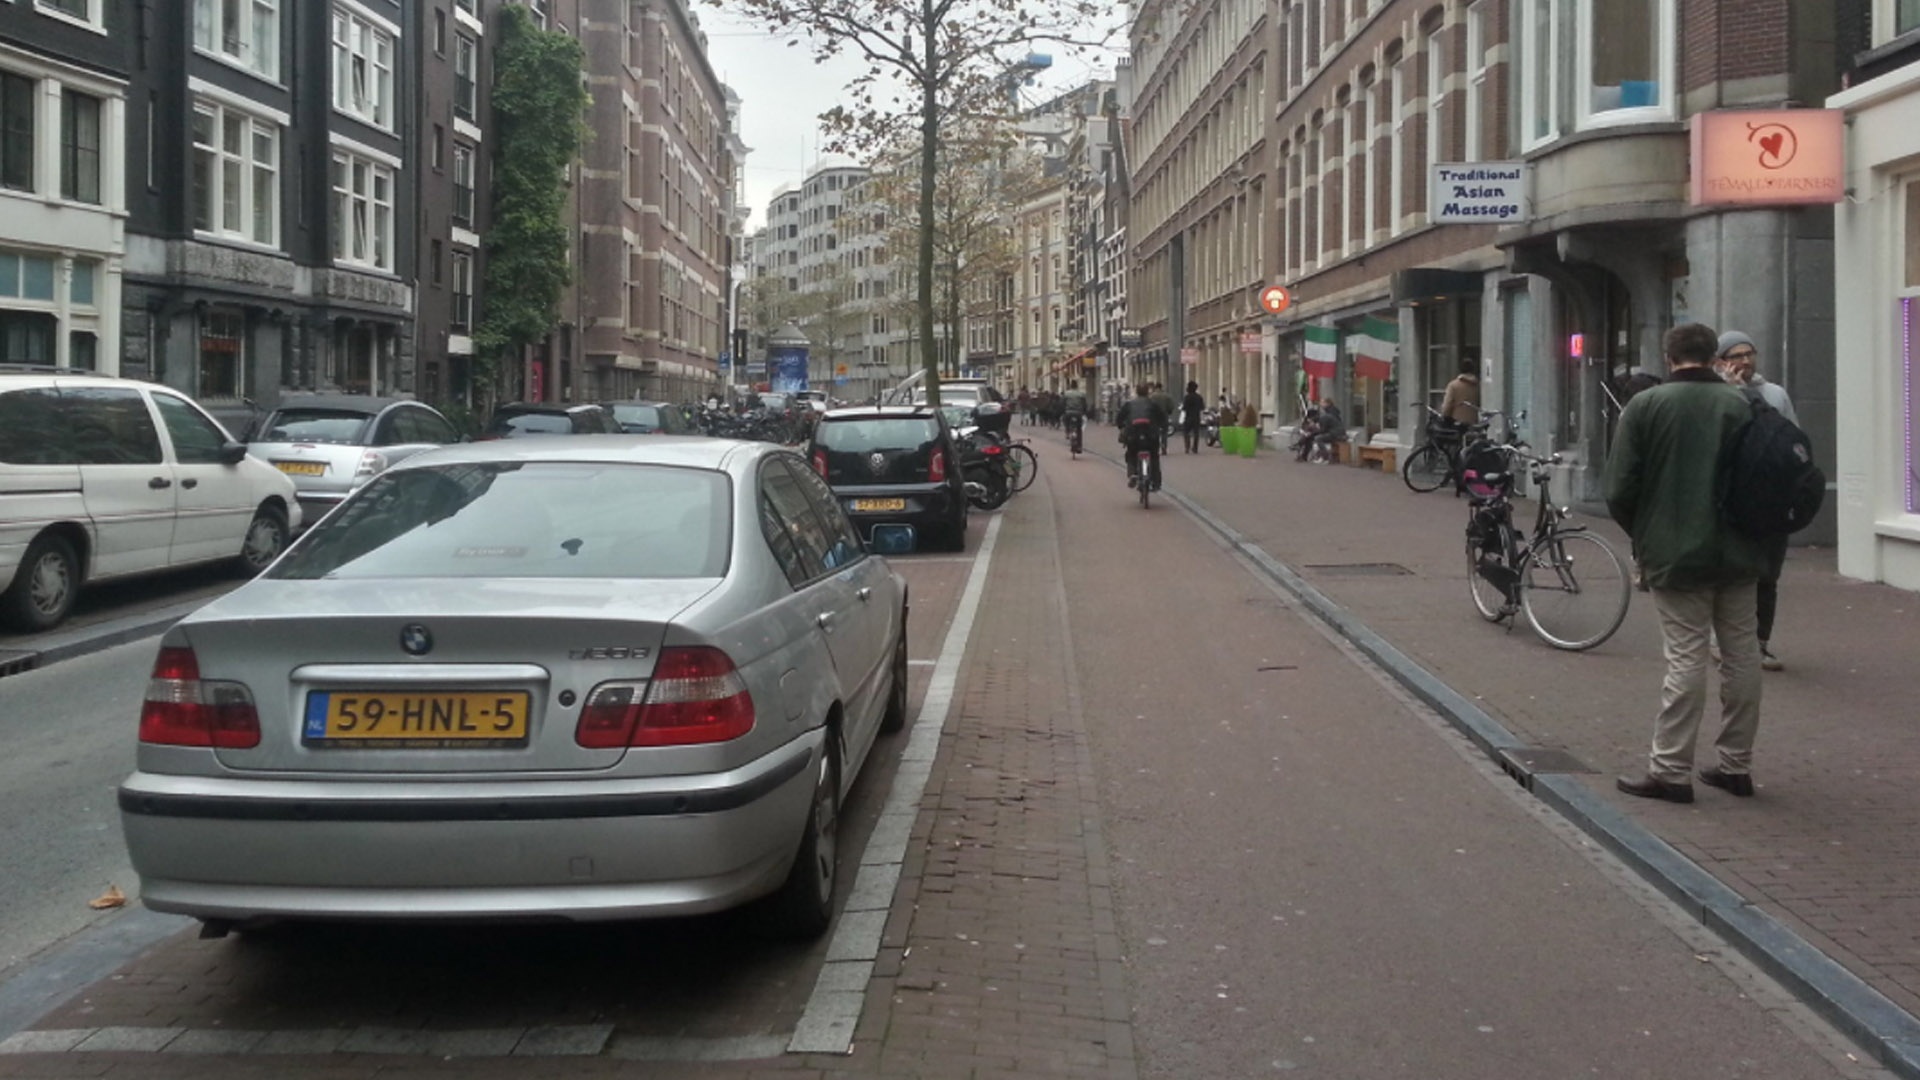 Односторонние велодорожки удобно размещать на узких улицах. И, кстати, велодорожки не противоречат парковке